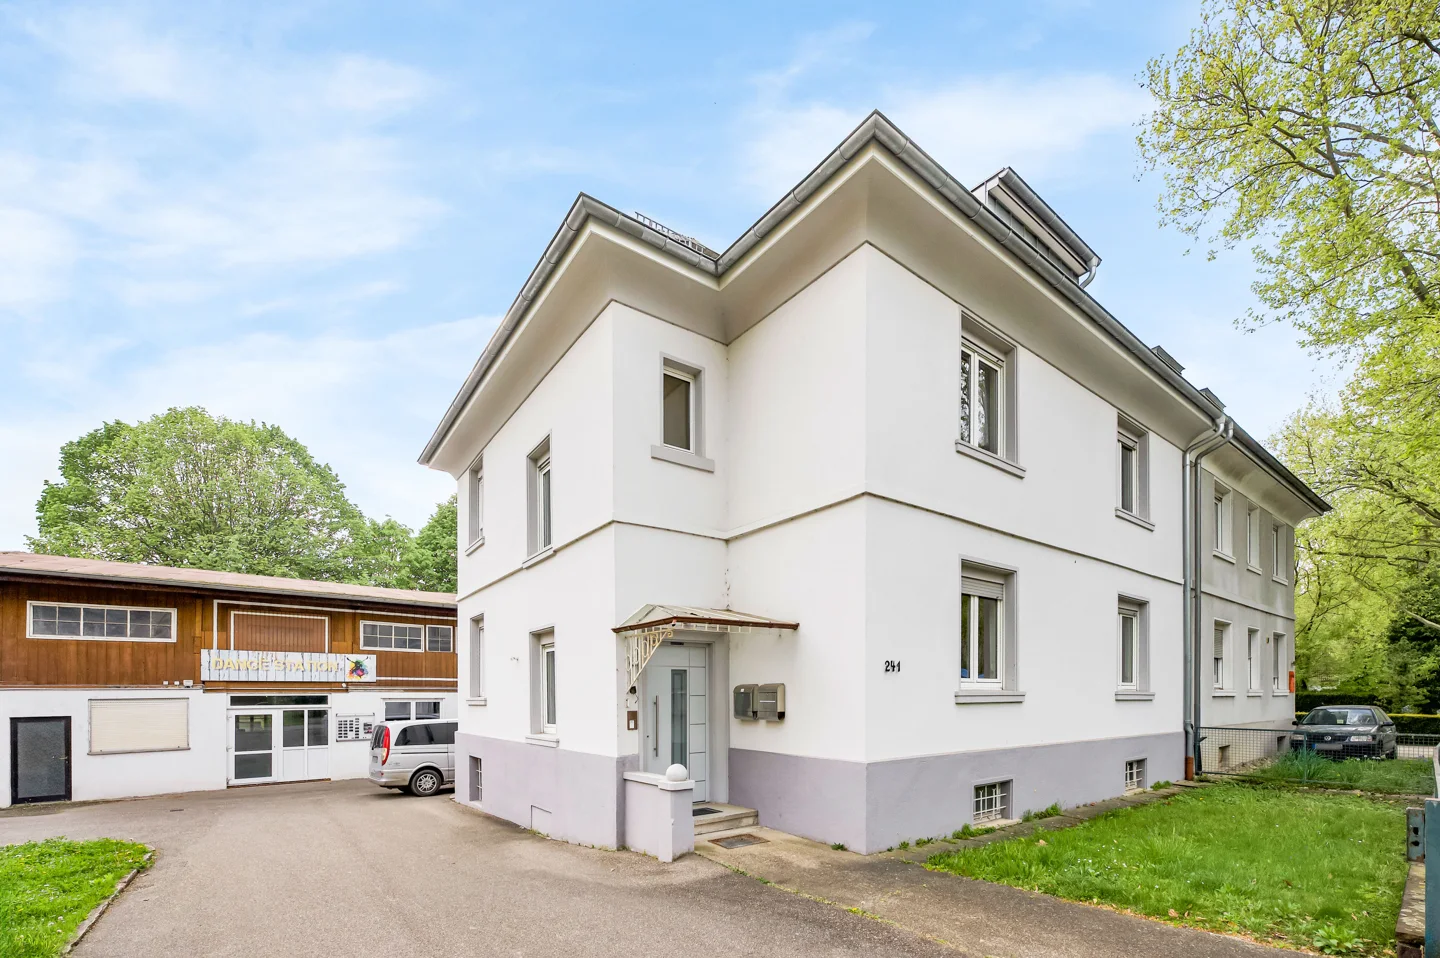 Vielseitiges Wohnen in Baden-Baden: Zwei Wohnungen in sanierter Doppelhaushälfte und großem Nebengebäude am Park Wörthböschel